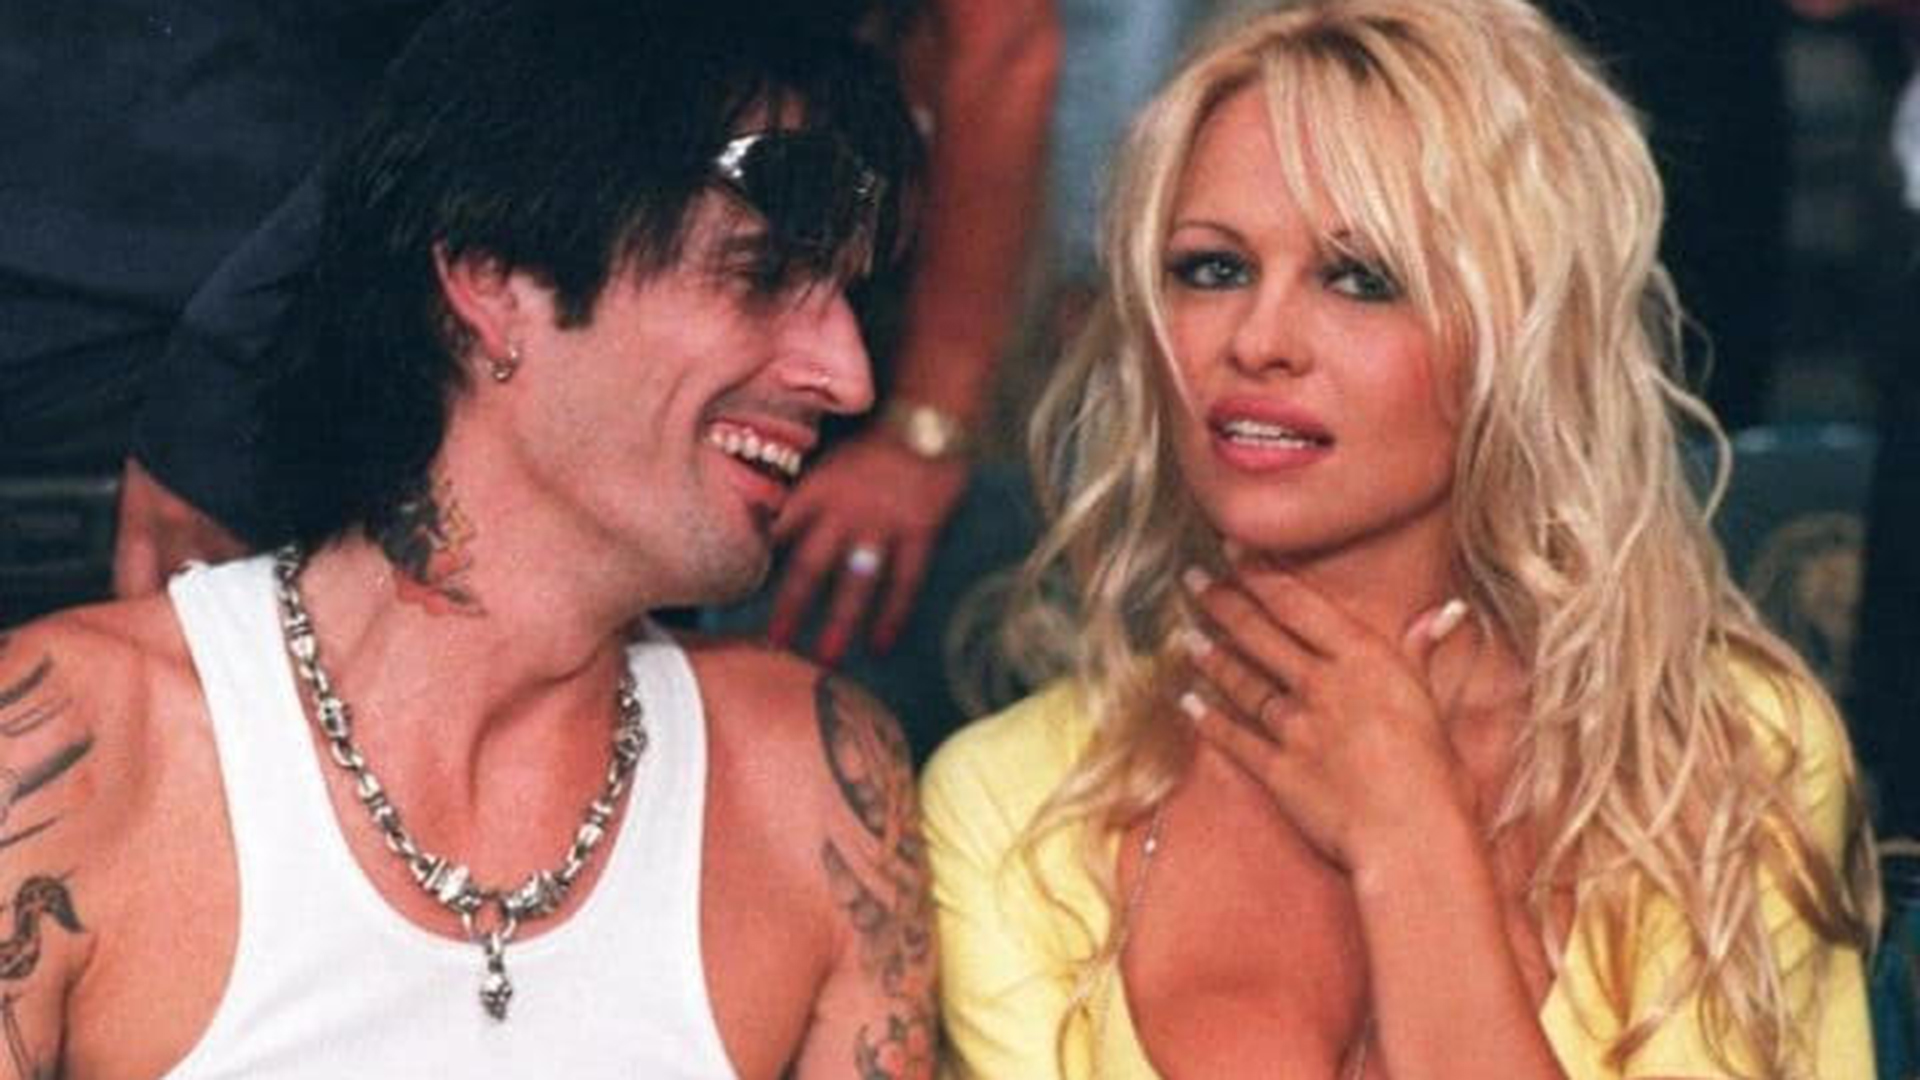 El músico Tommy Lee y la actriz Pamela Anderson se casaron en 1995. Un video erótico inauguró toda una era en Internet. (AP)